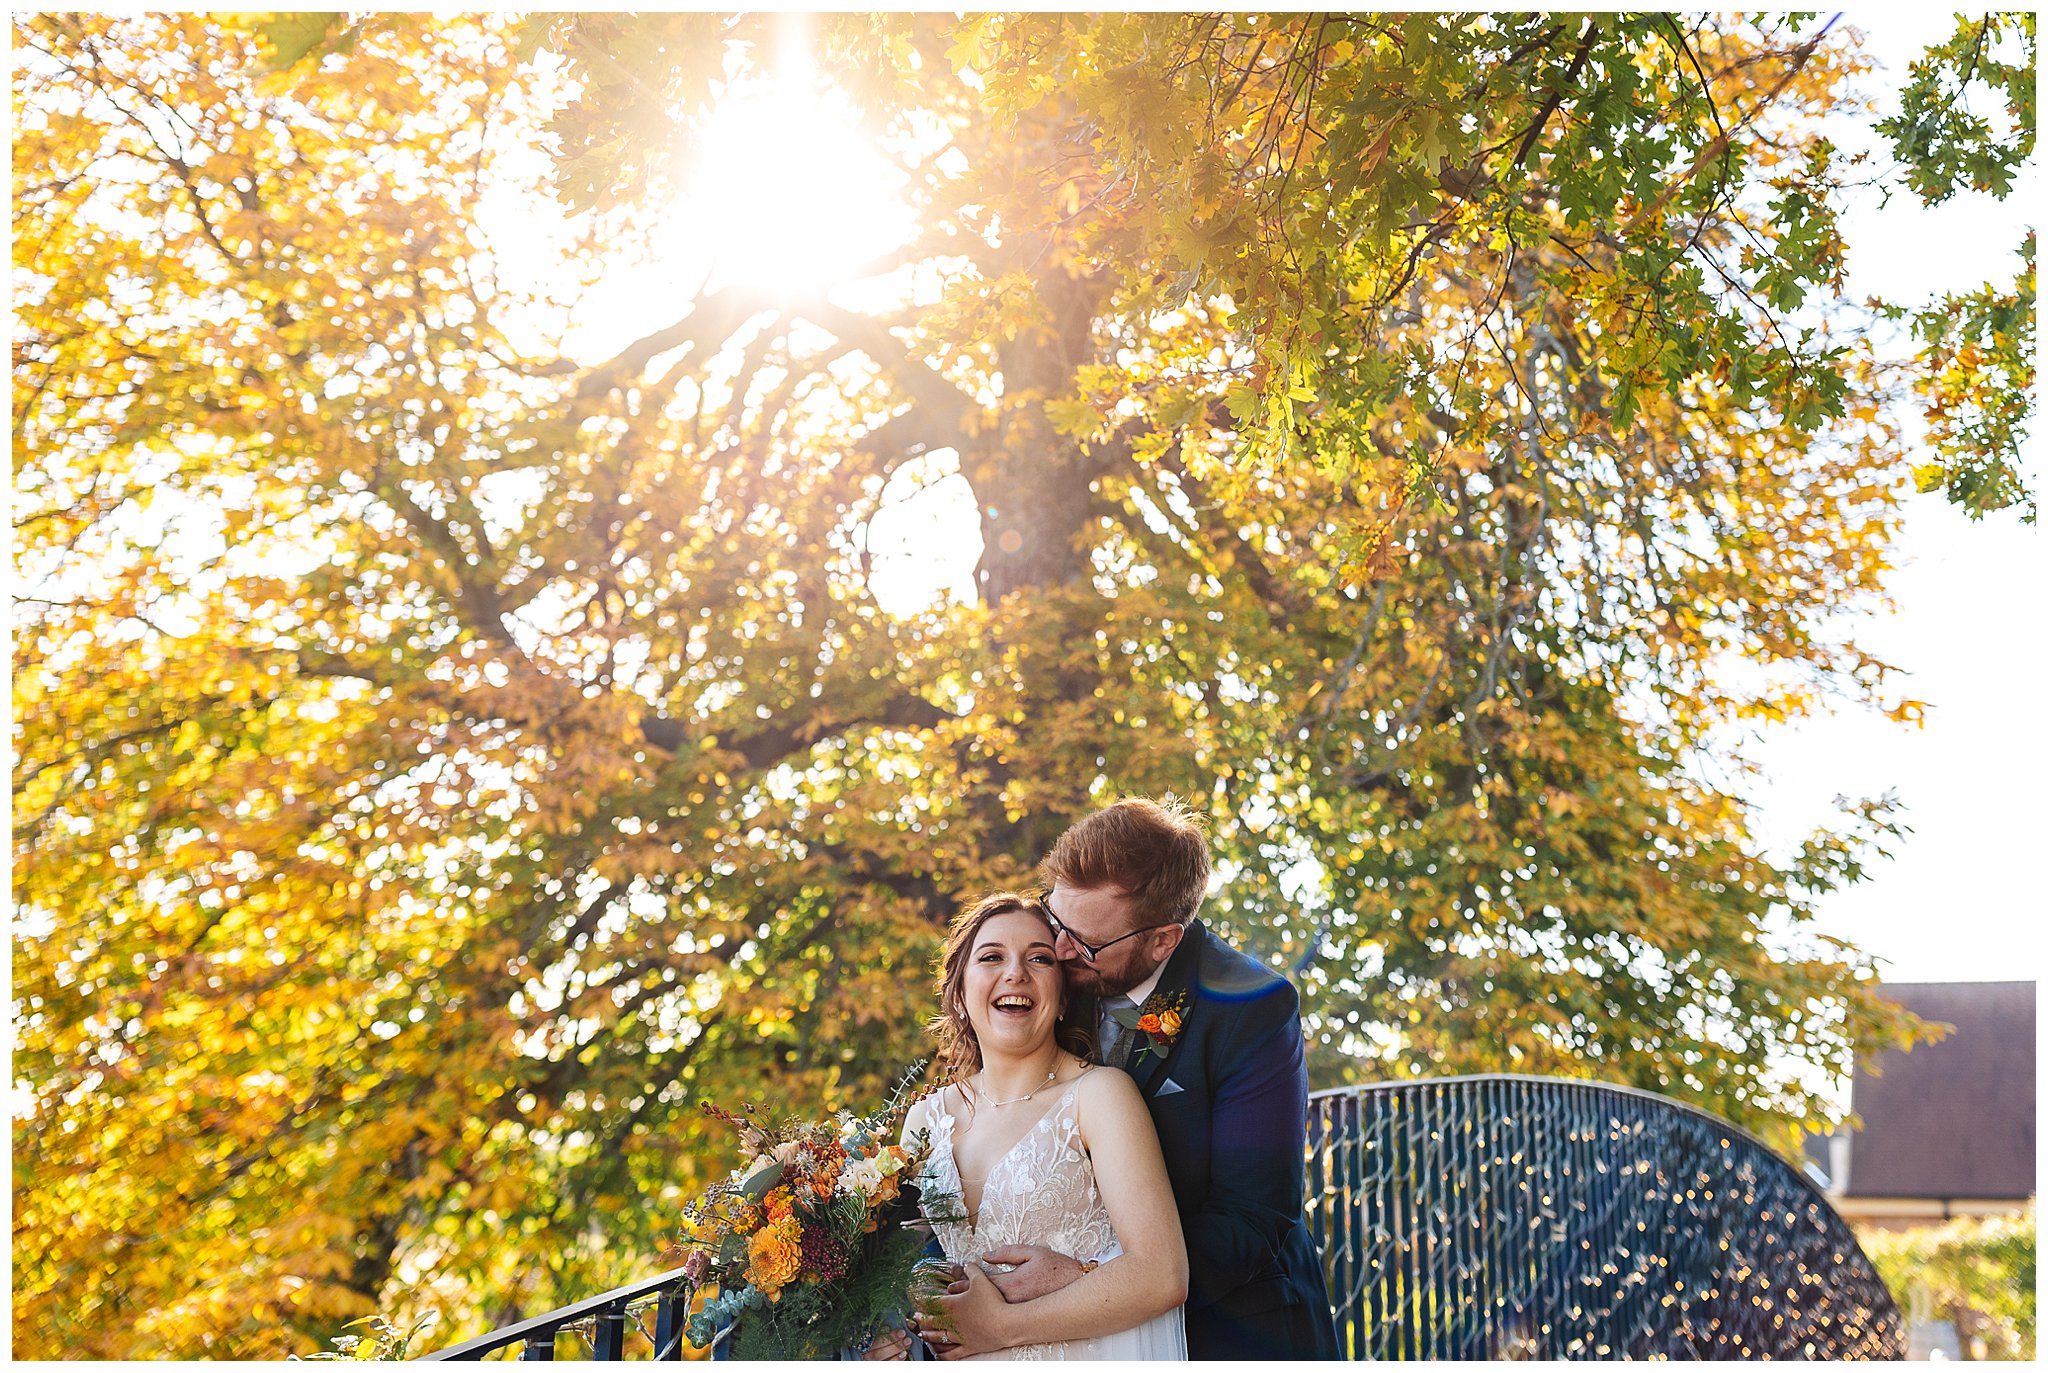 bassmead manor barns autumn wedding with sun flare through trees